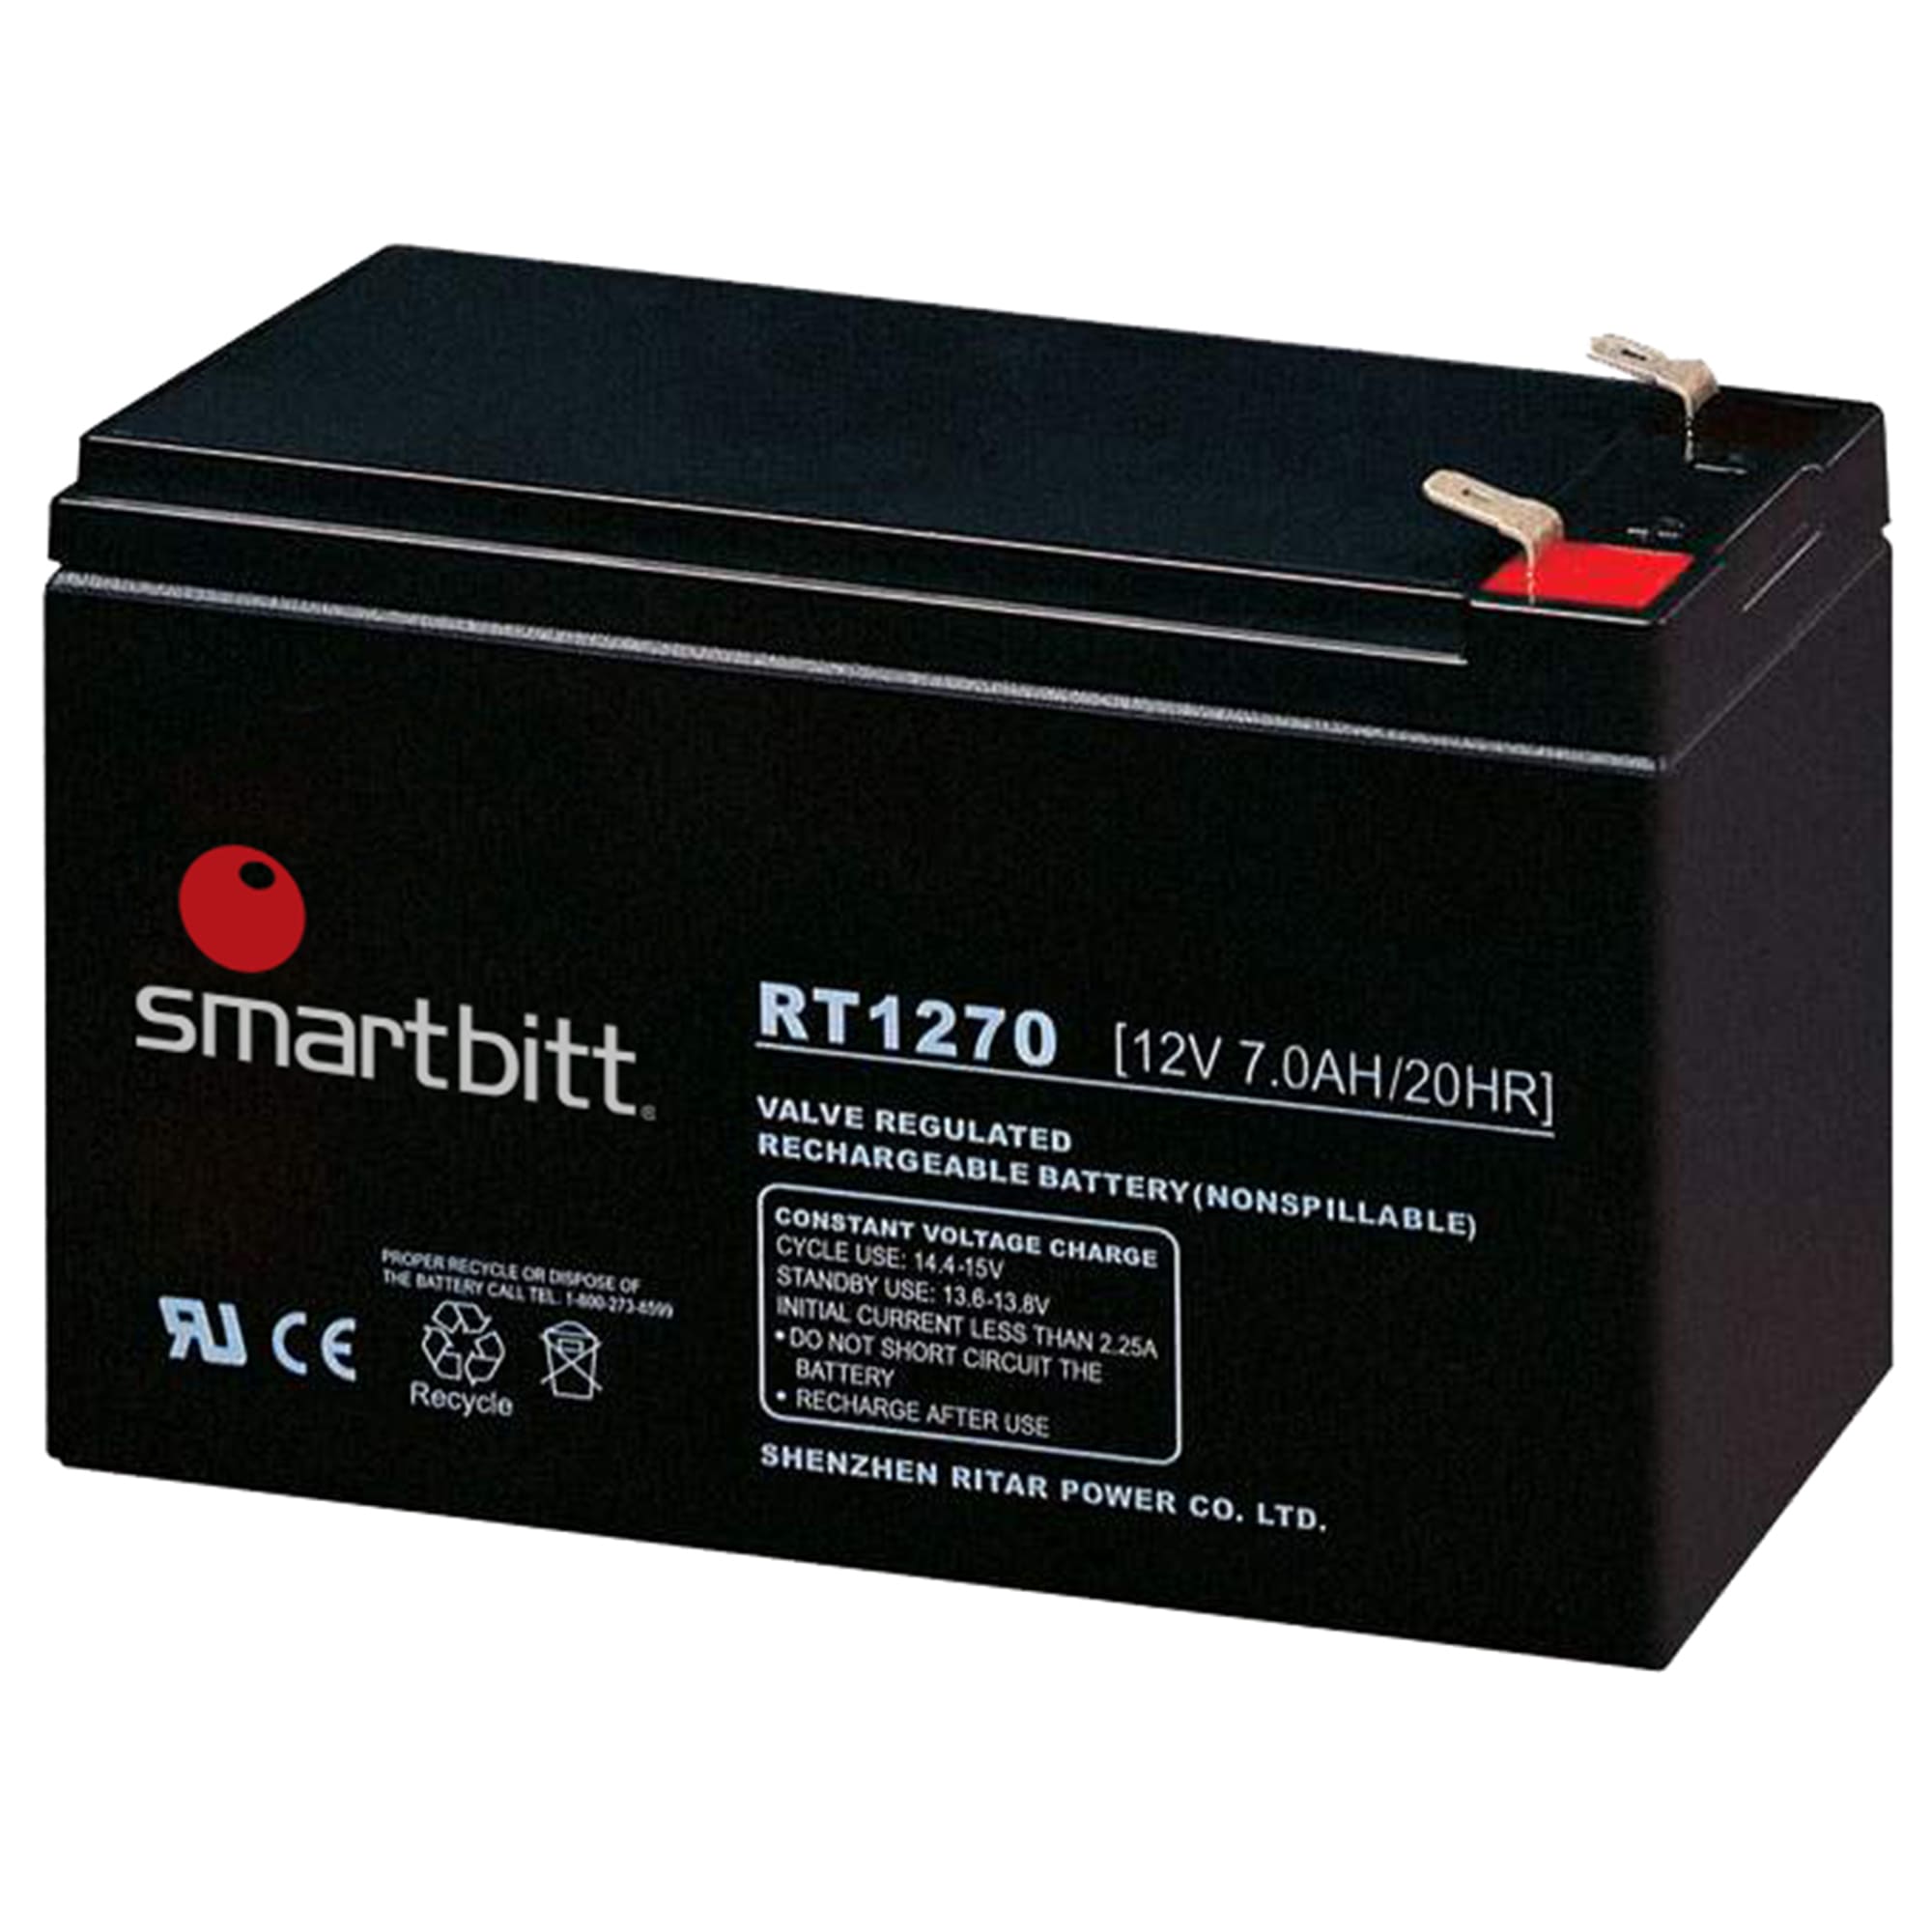 Batería de 12V-7AH, de reemplazo para Nobreak, sellada, libre de mantenimiento, Smartbitt SBBA12-7